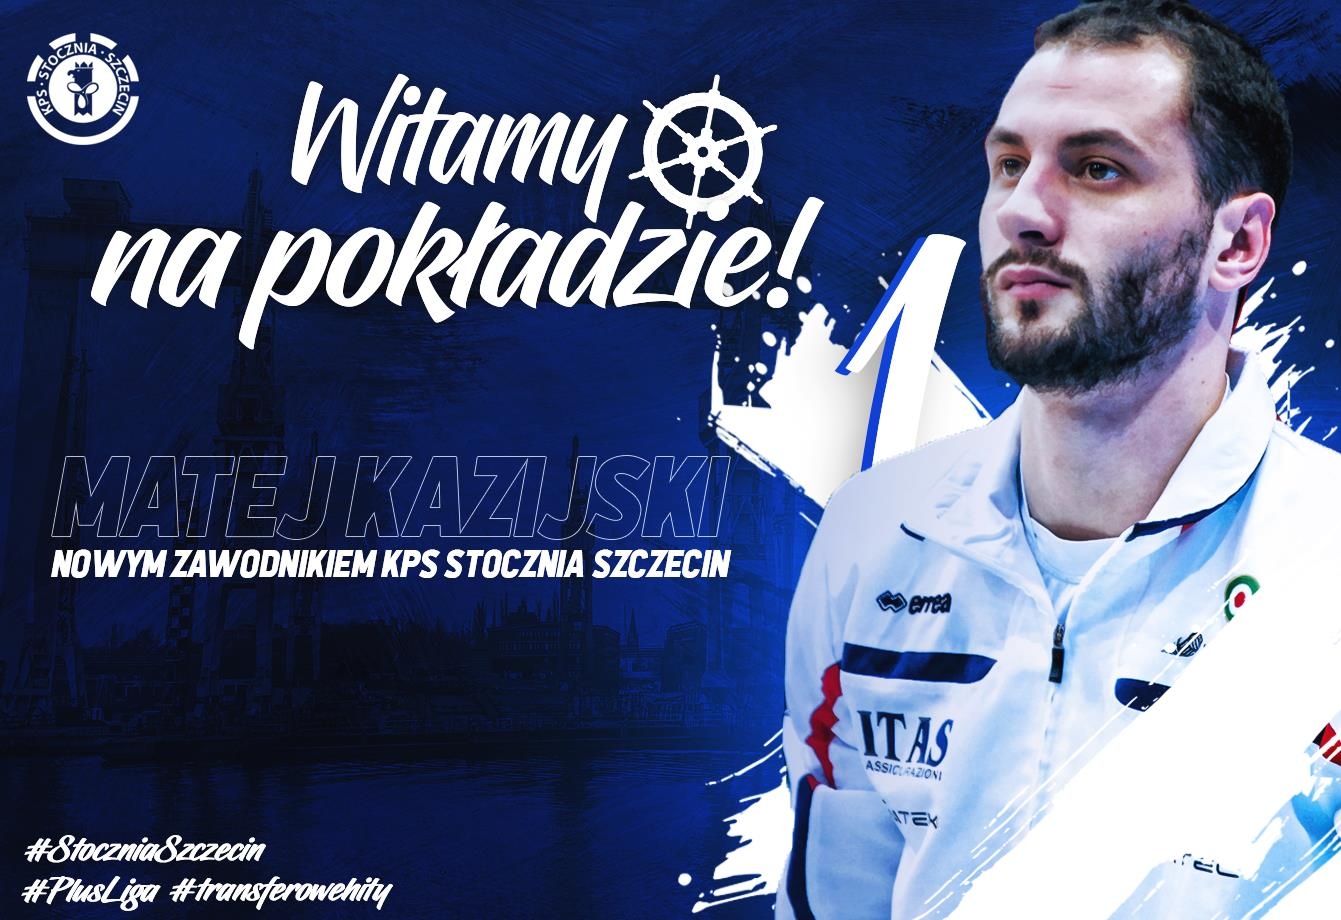 Звездата на българския волейбол Матей Казийски отново се събра с